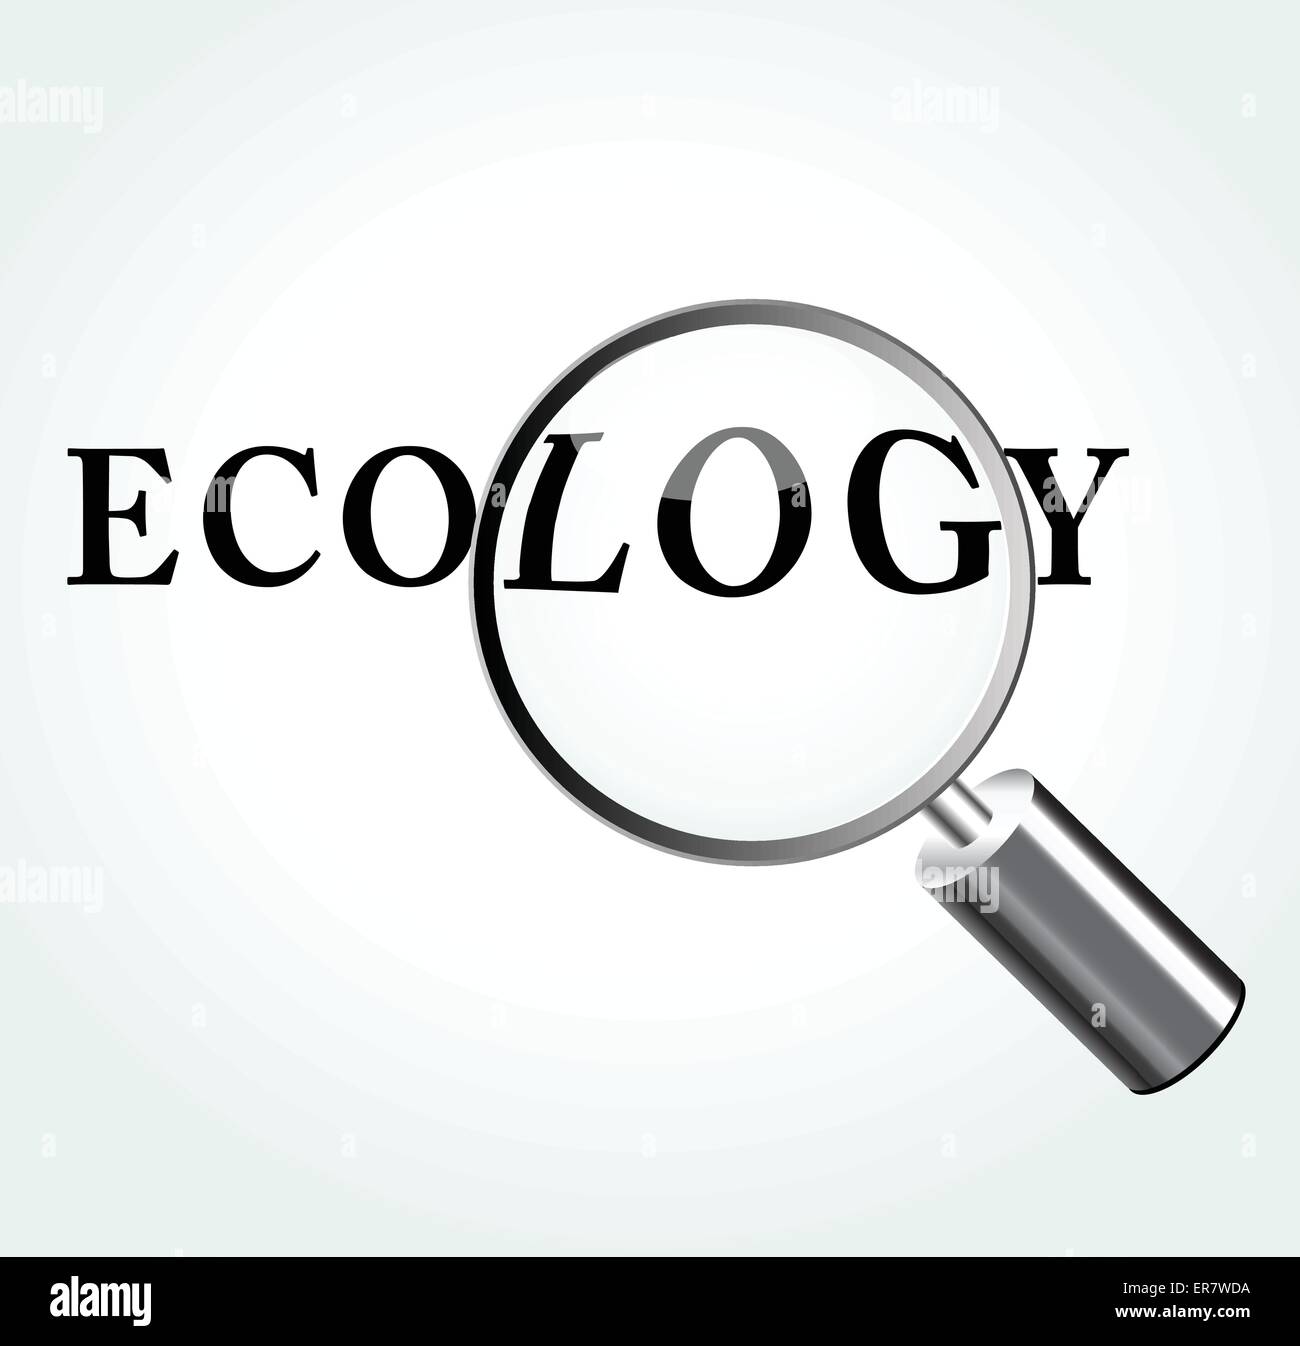 Vector illustration of ecology concept avec une loupe Illustration de Vecteur